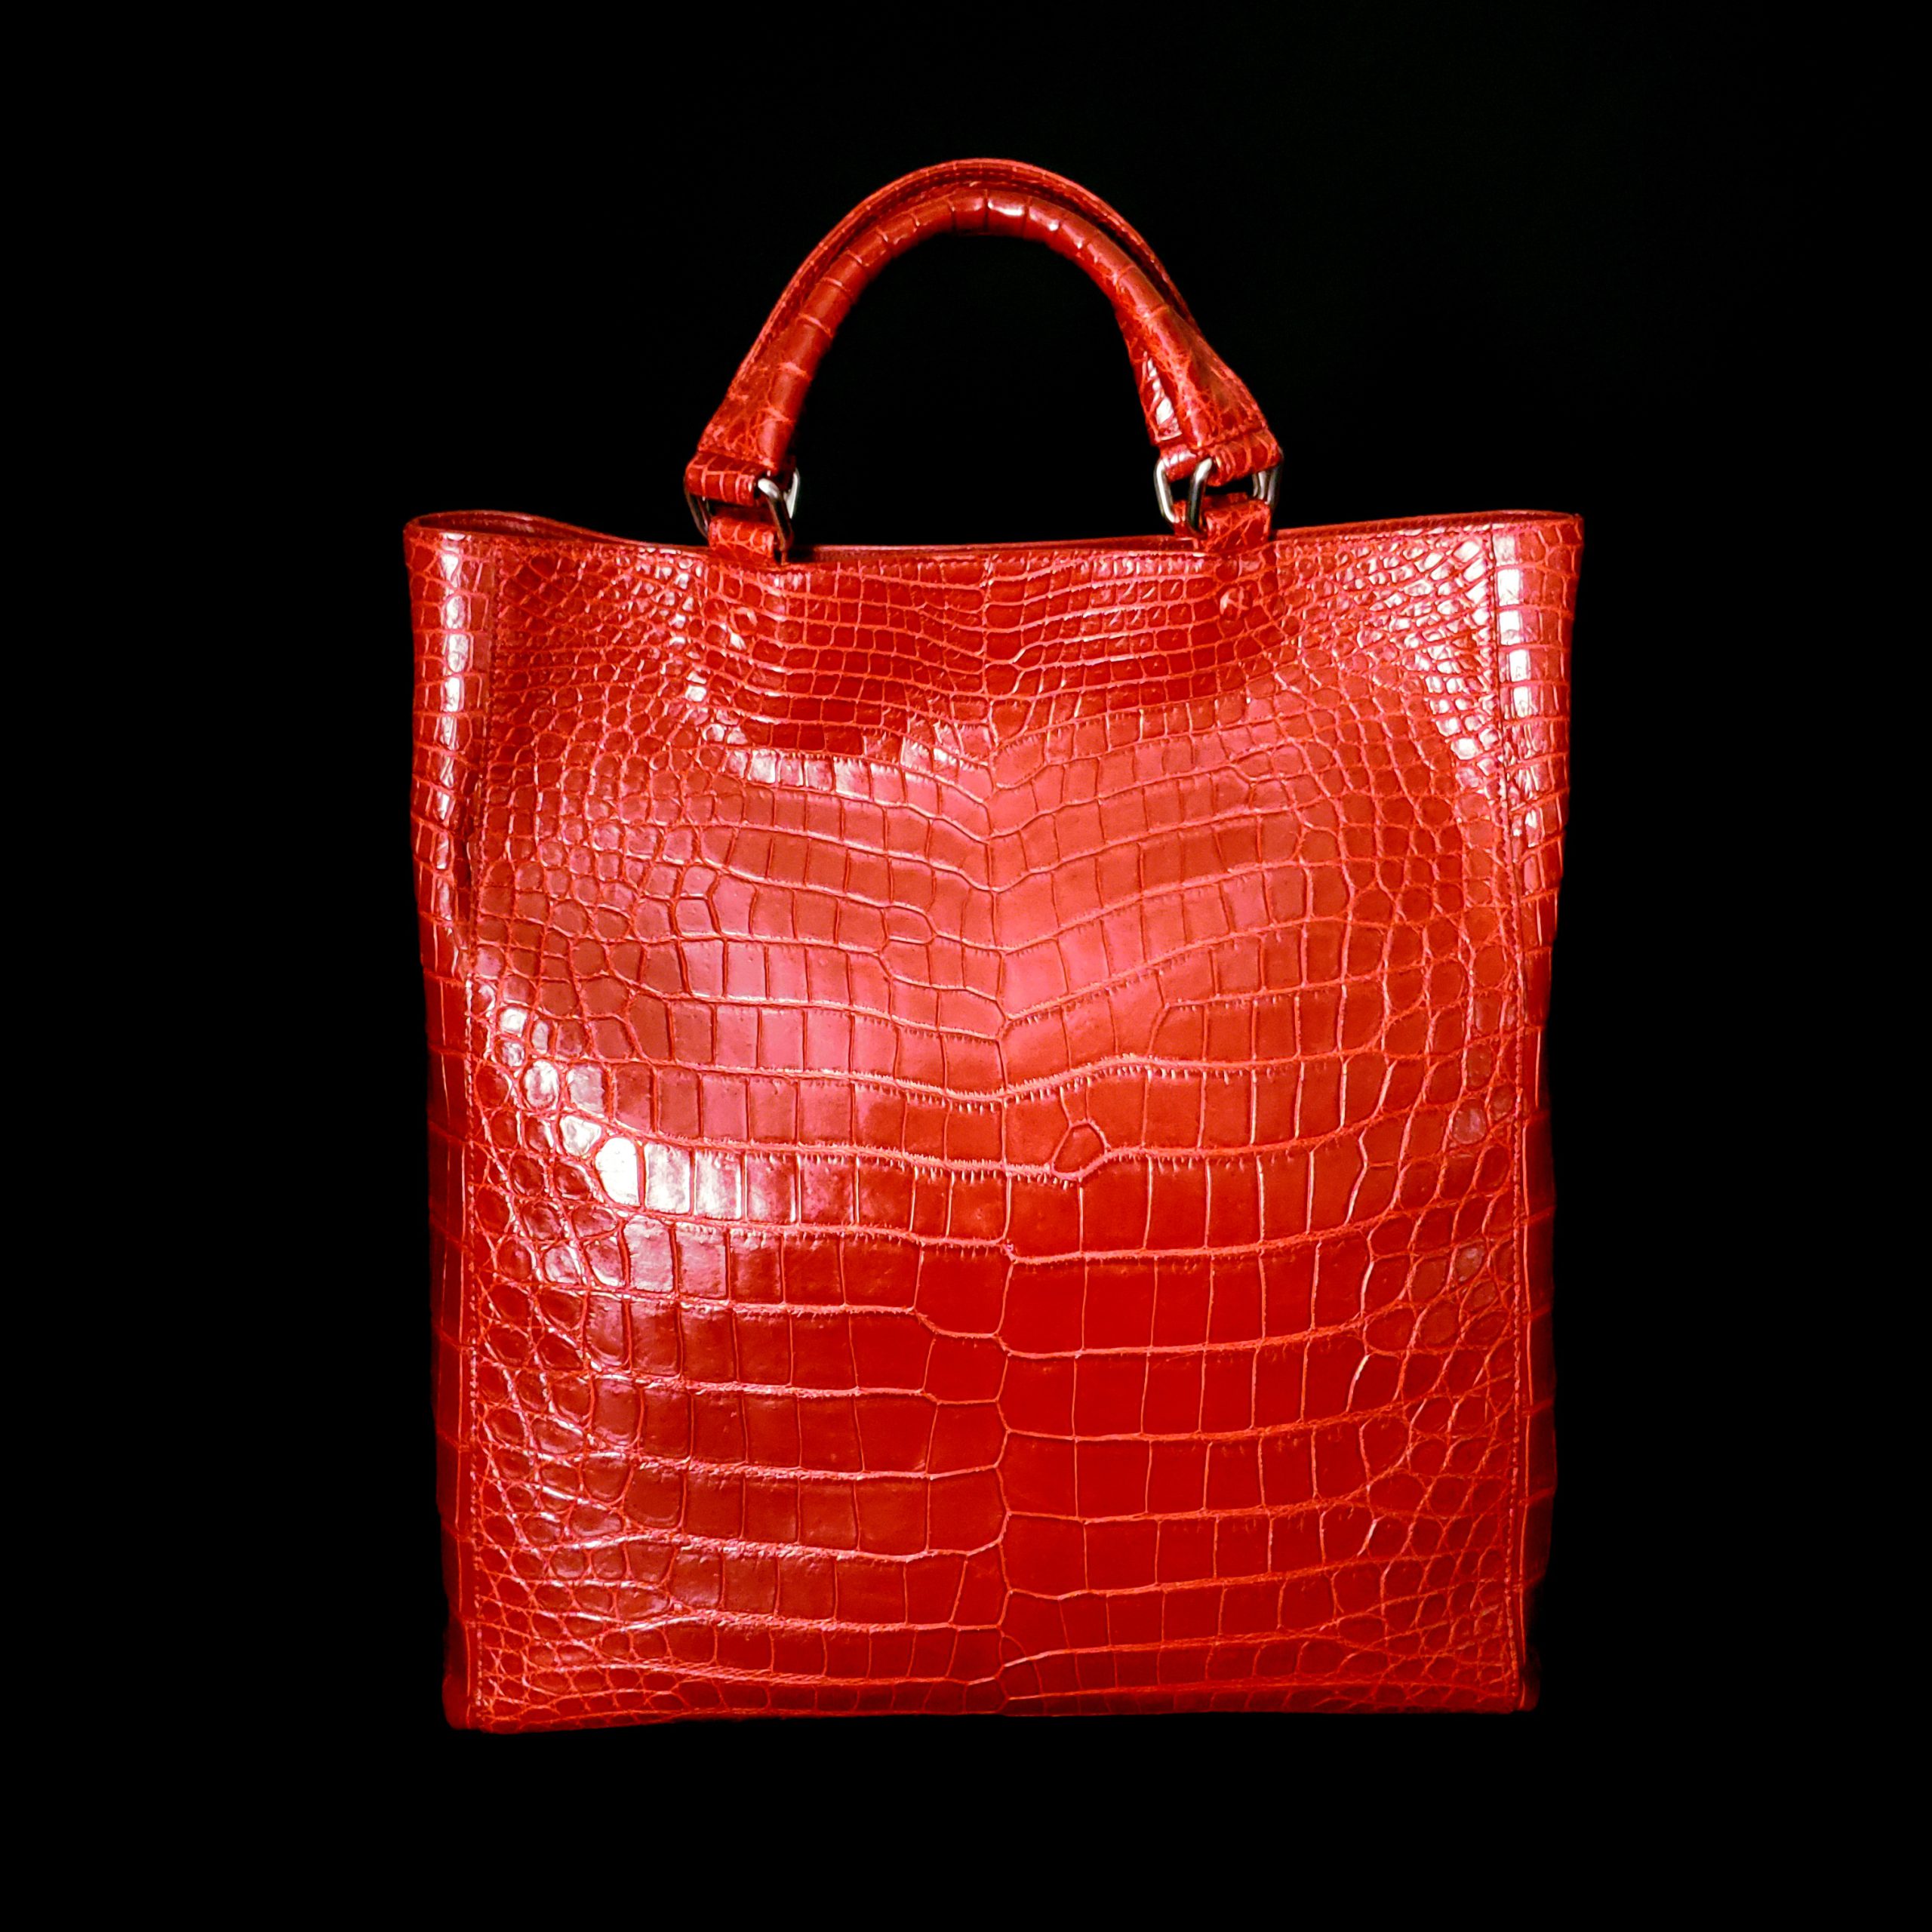 株式会社レ・ザック - Le'sacはオリジナルブランドの革製品販売・製造 